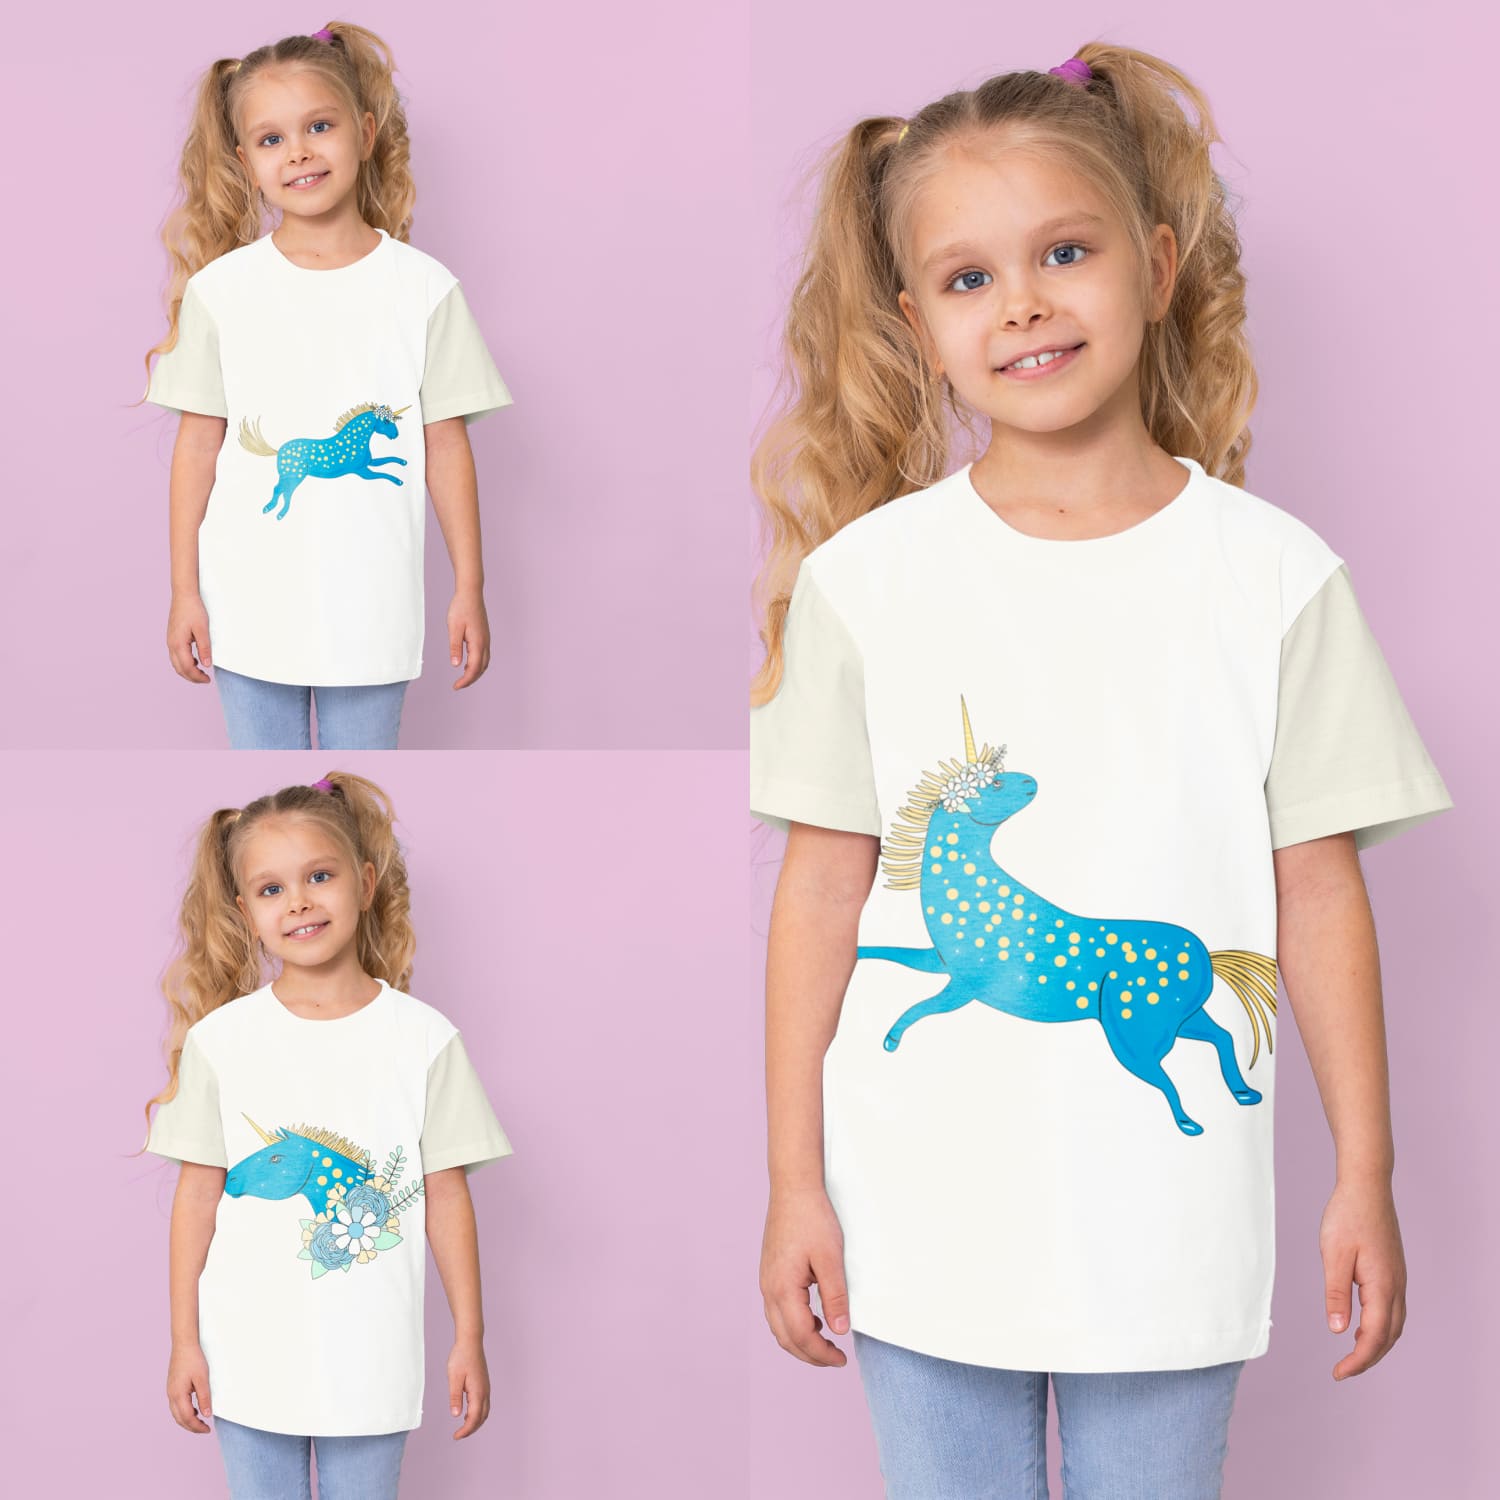 Unicorn T-shirt Designs Bundle Cover.